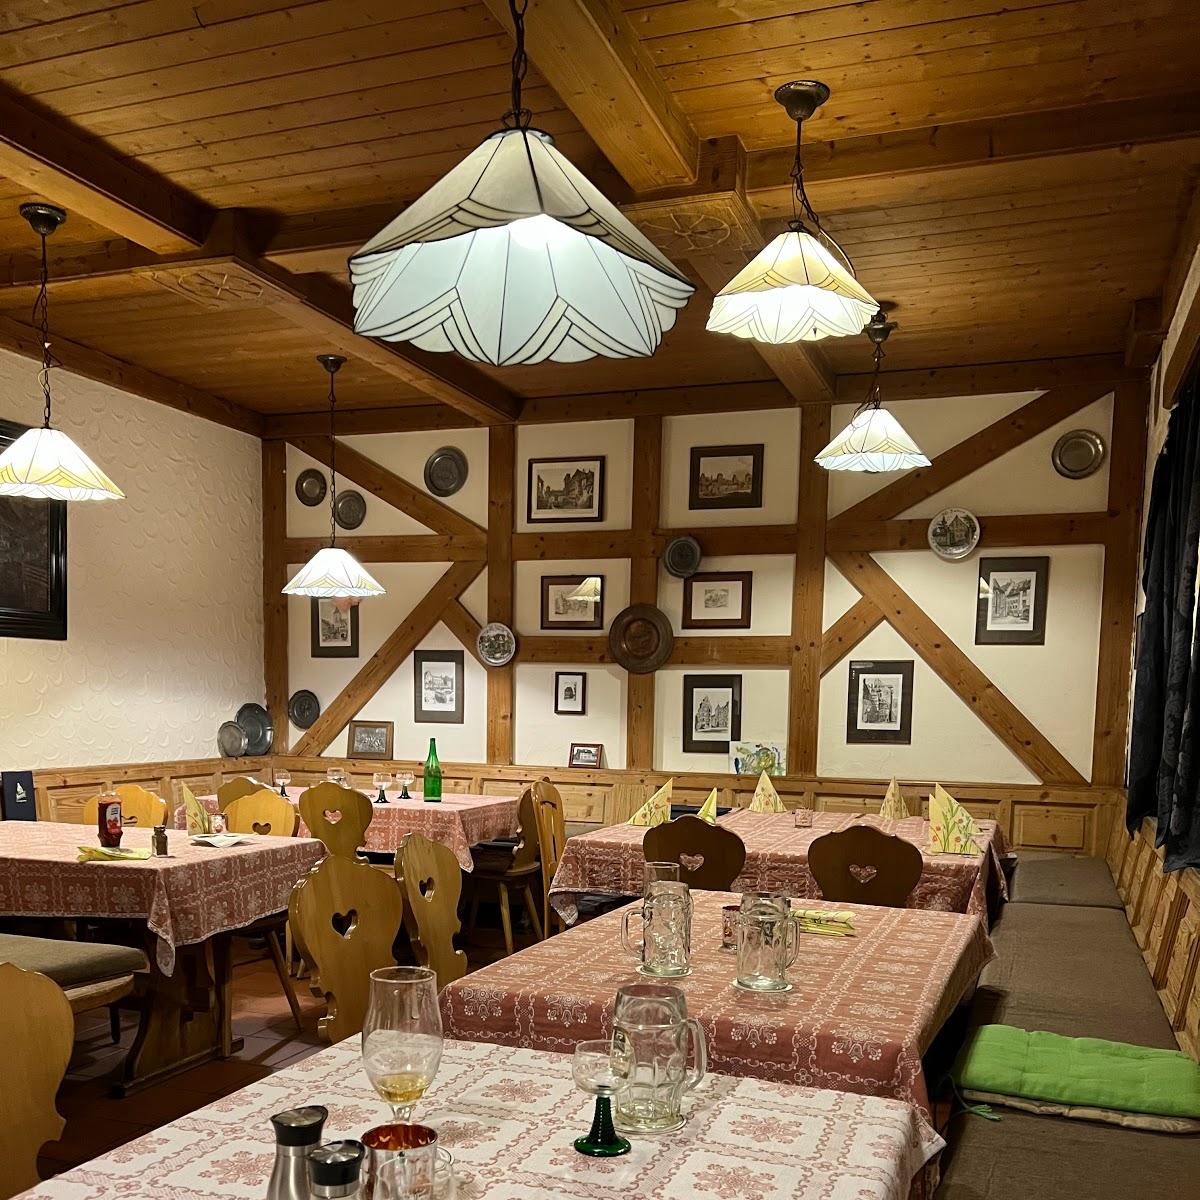 Restaurant "Gaststätte Loy" in Nürnberg